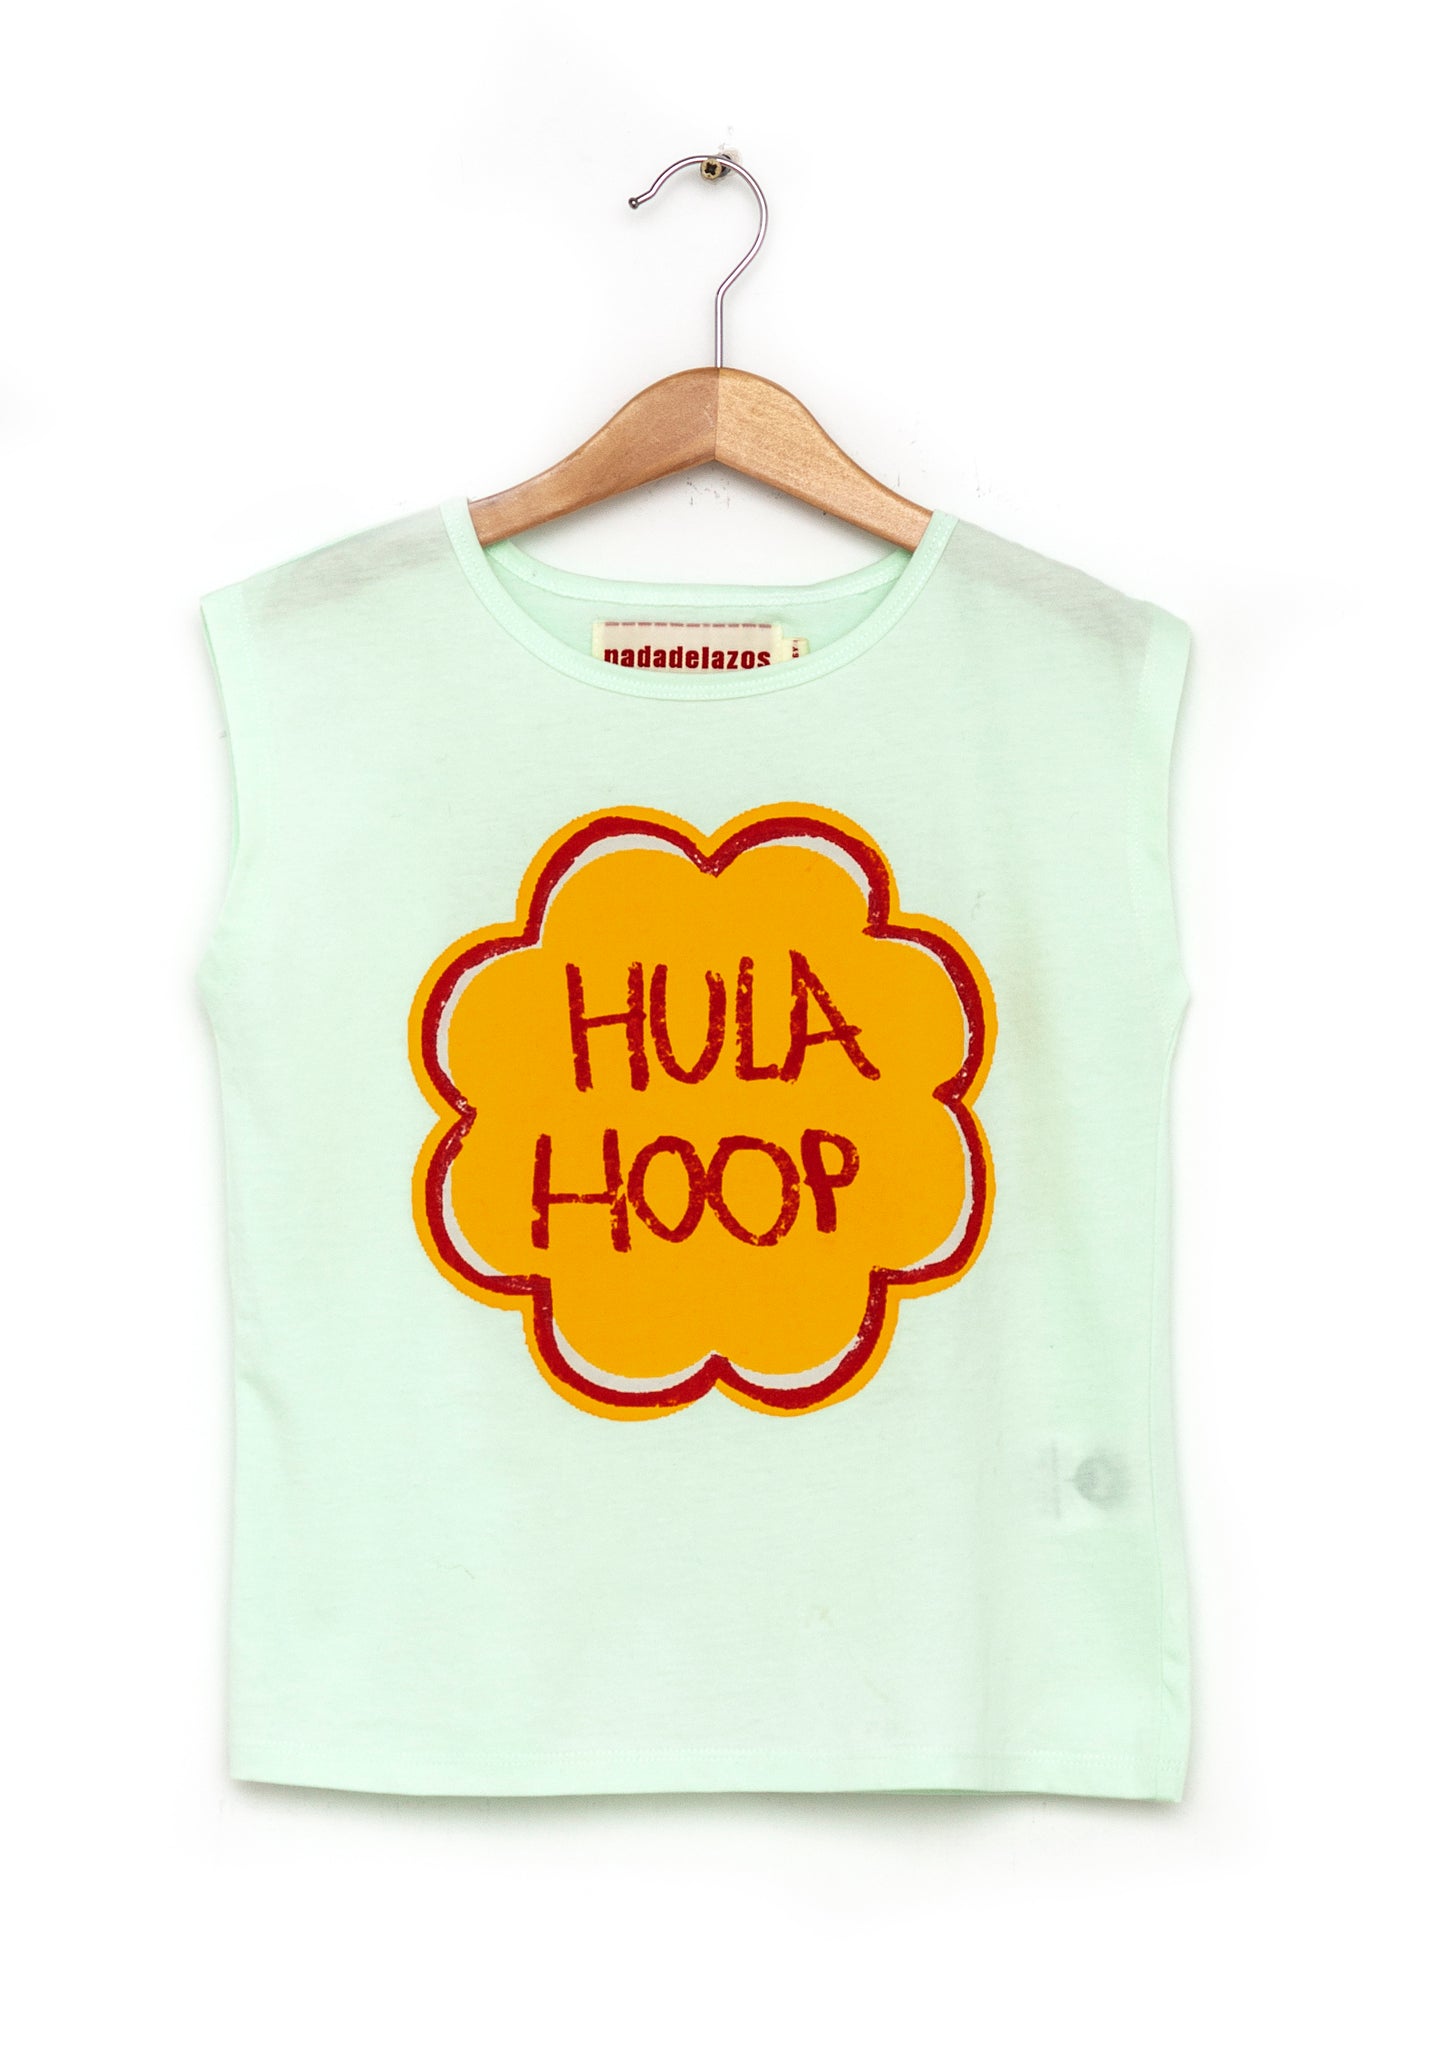 Hula Hoop